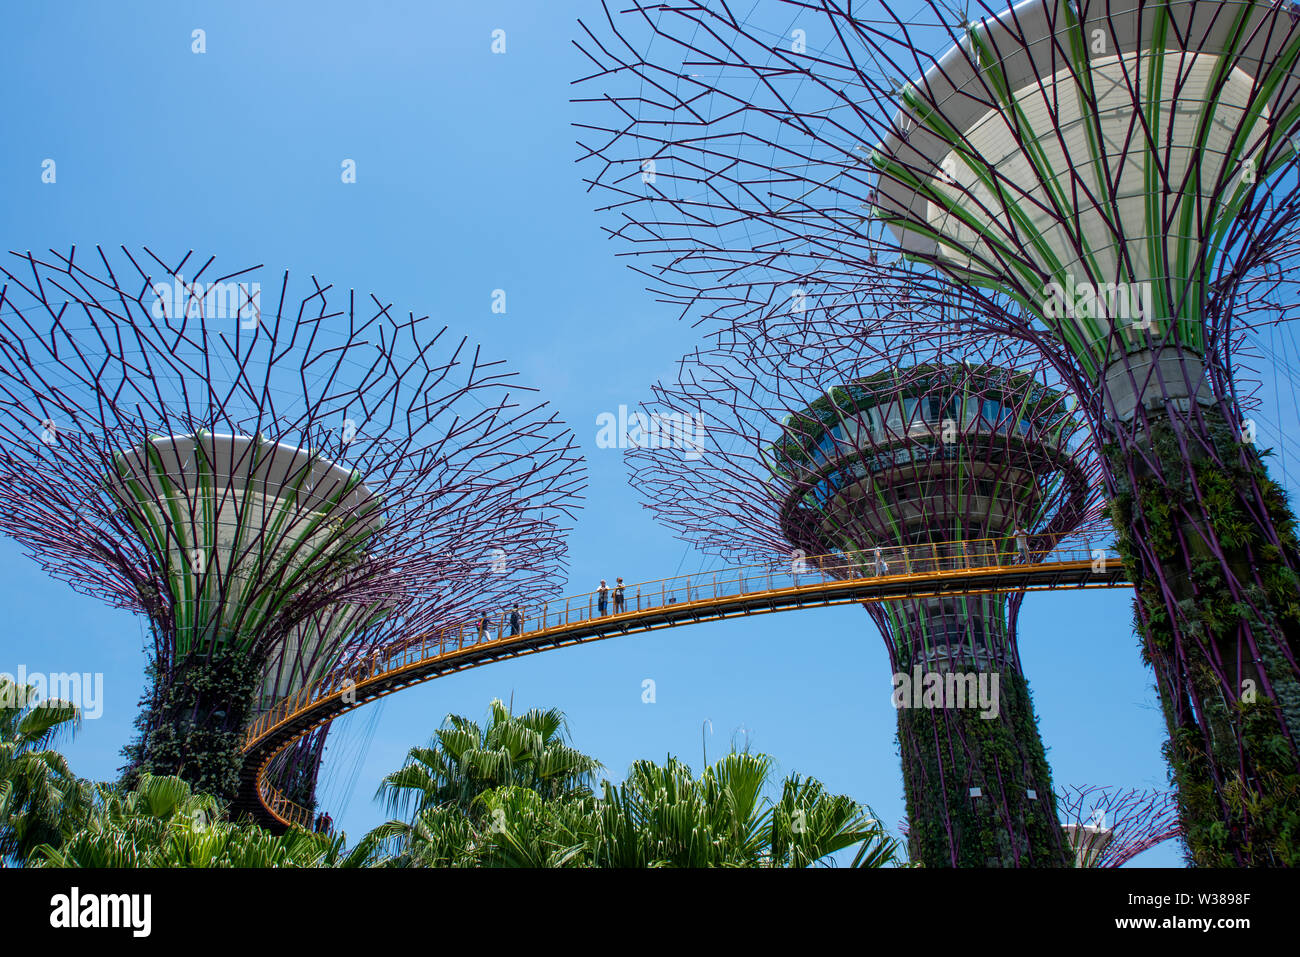 Singapur, Gärten durch die Bucht, Supertree Grove, vertikale Gärten bis zu 16 Stockwerke hoch. OCBC Skyway. Stockfoto